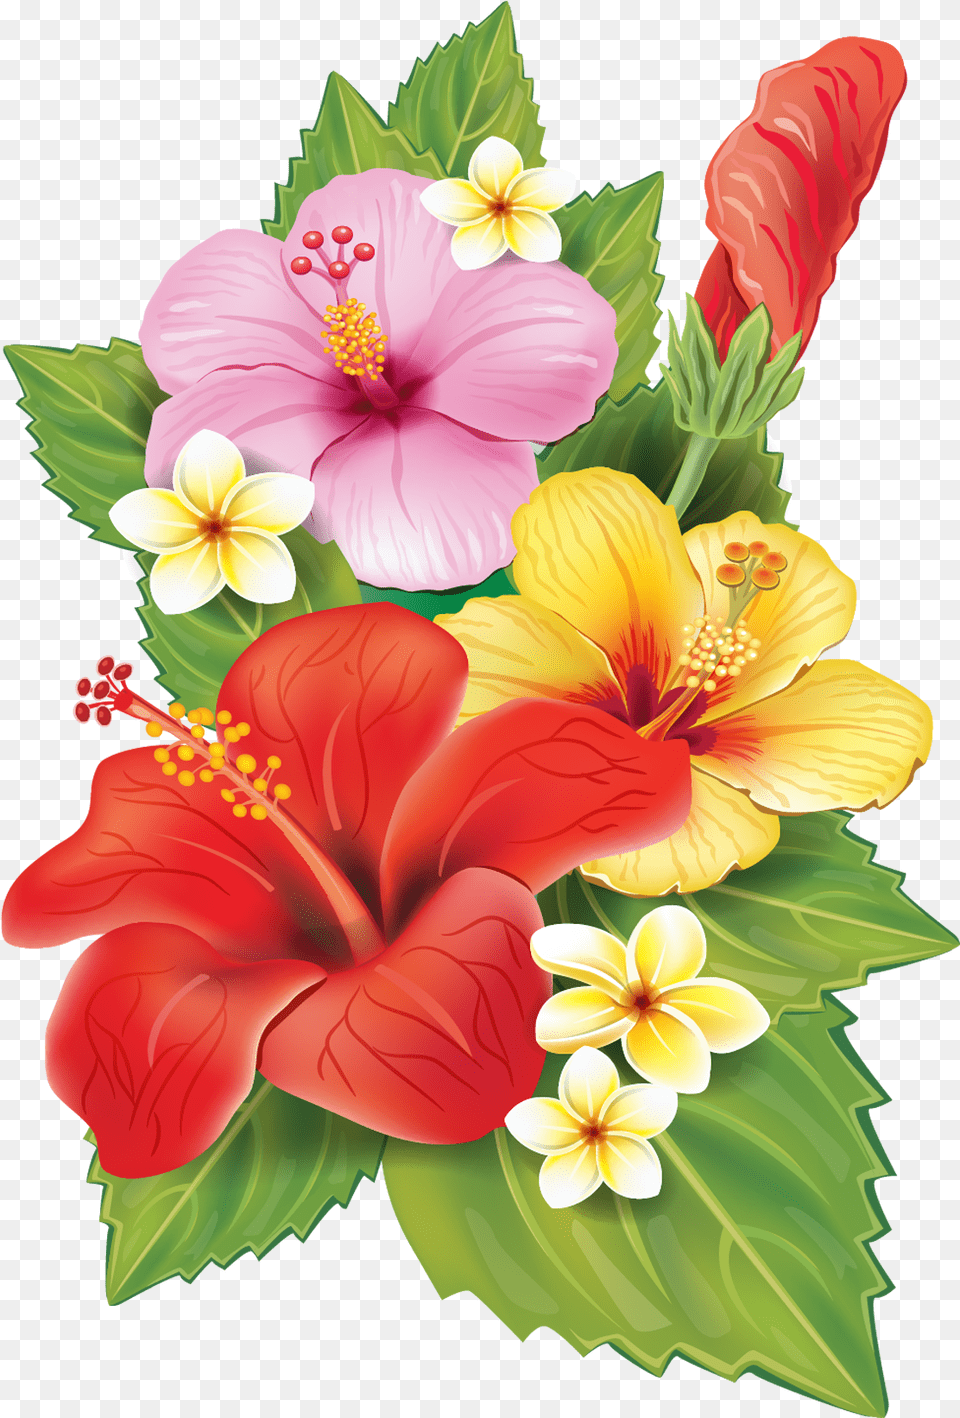 Tropical Flower Illustration Background Tropical Flowers, Plant, Hibiscus, Flower Arrangement, Flower Bouquet Png